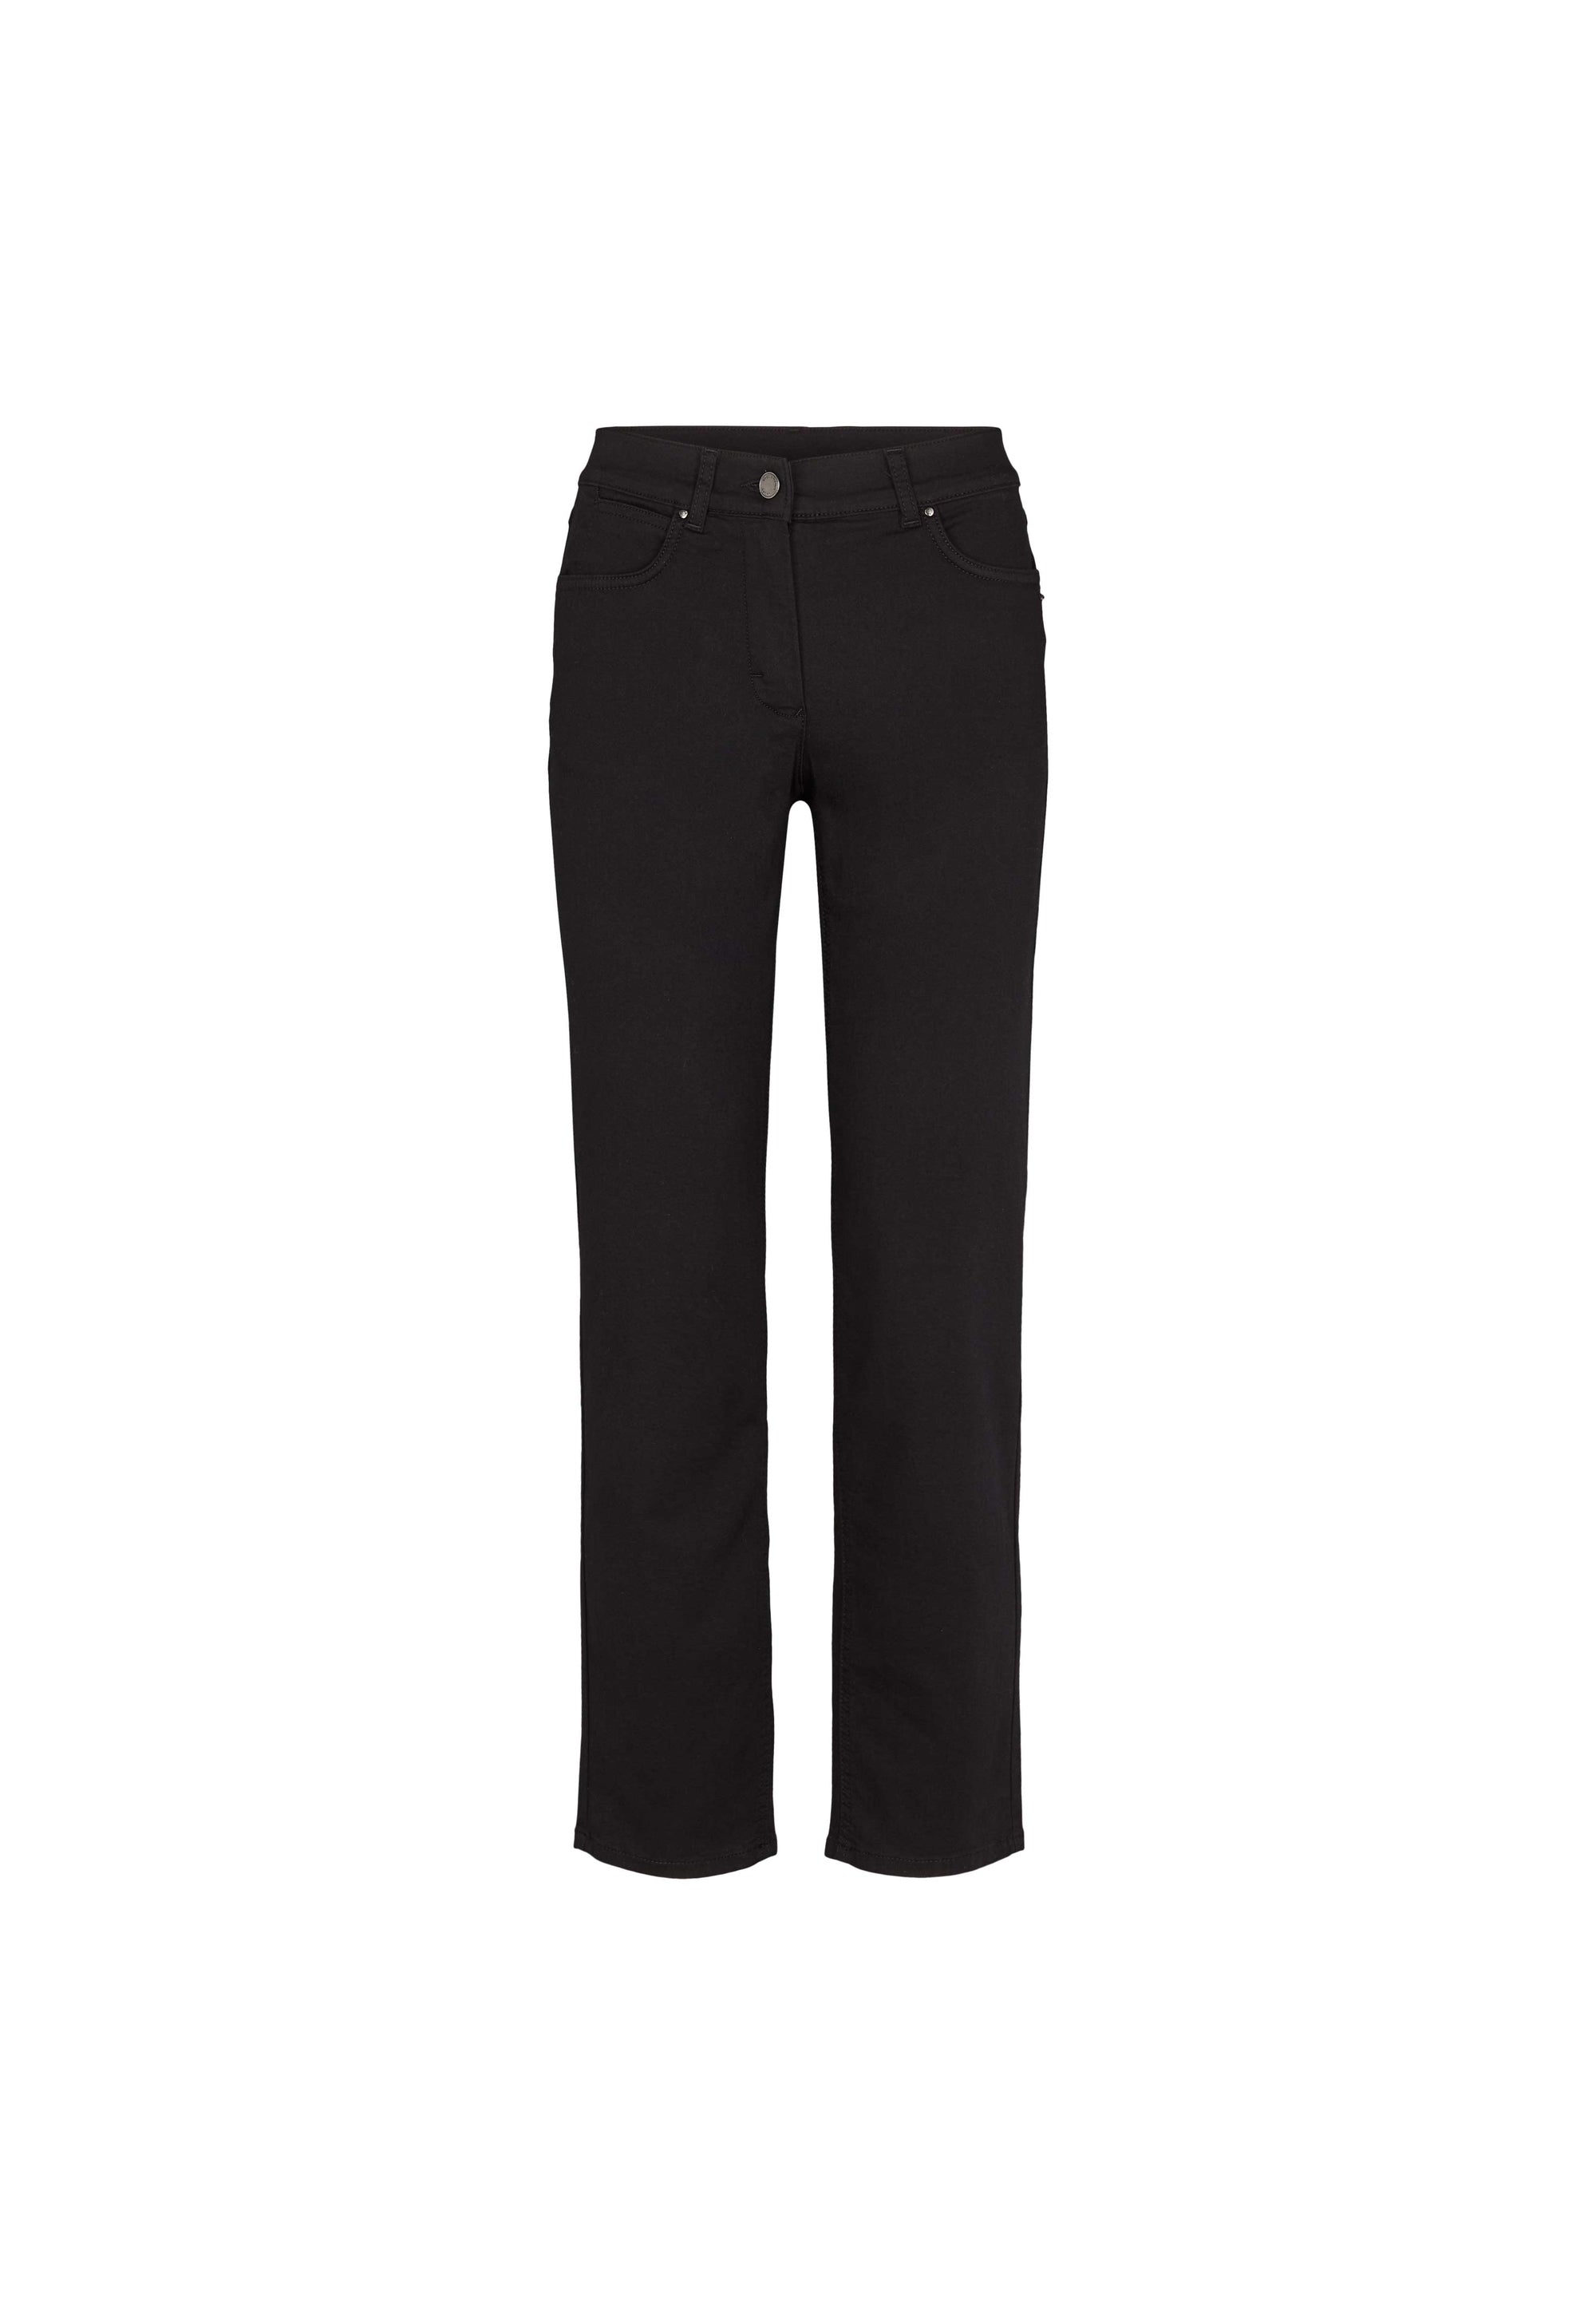 LAURIE Charlotte Regular - Short Length Trousers REGULAR 99100 Black